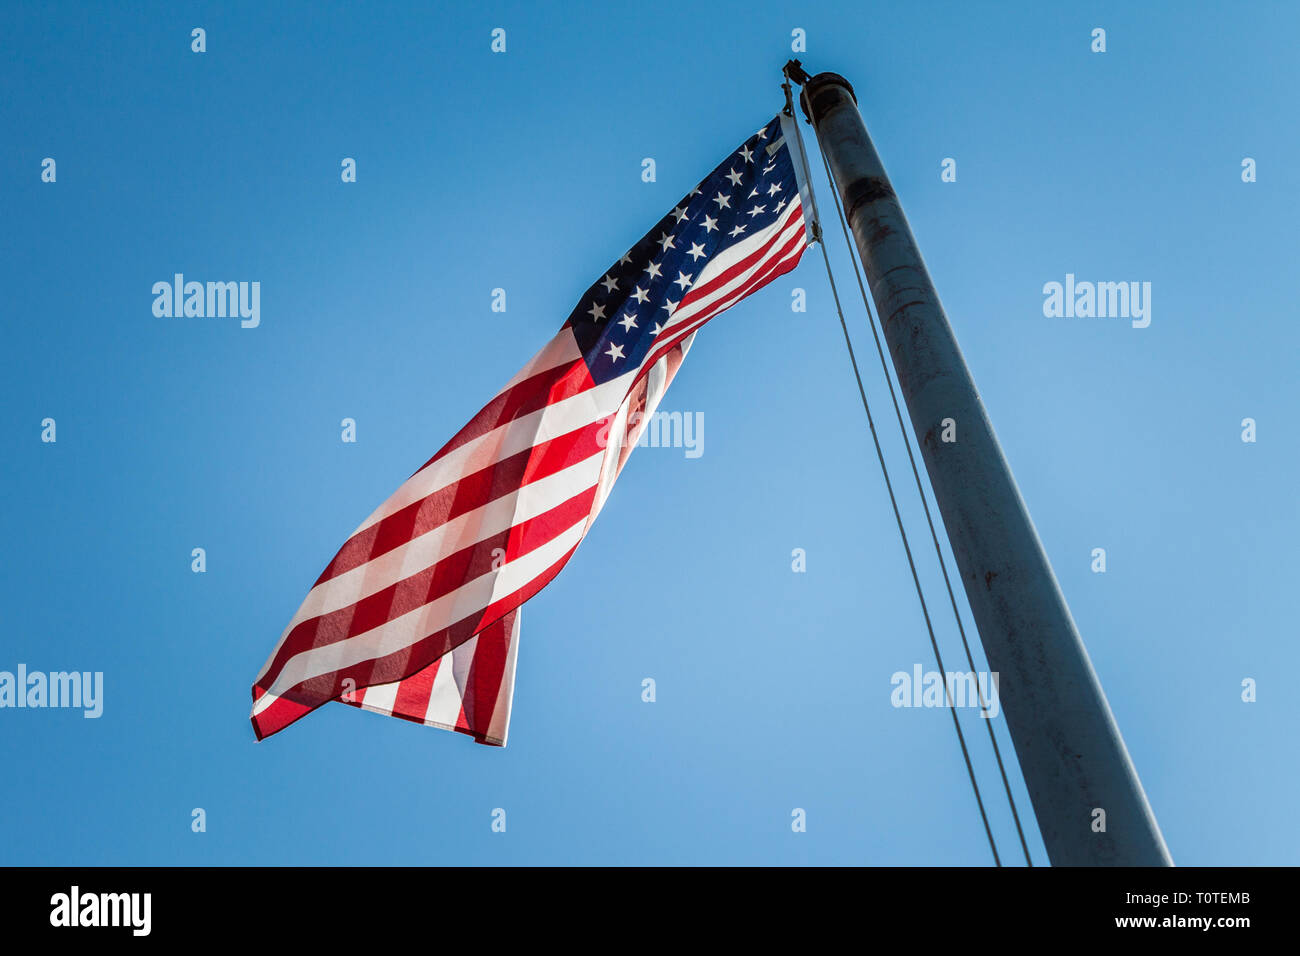 Le drapeau américain de haut vol sur une journée ensoleillée. Banque D'Images